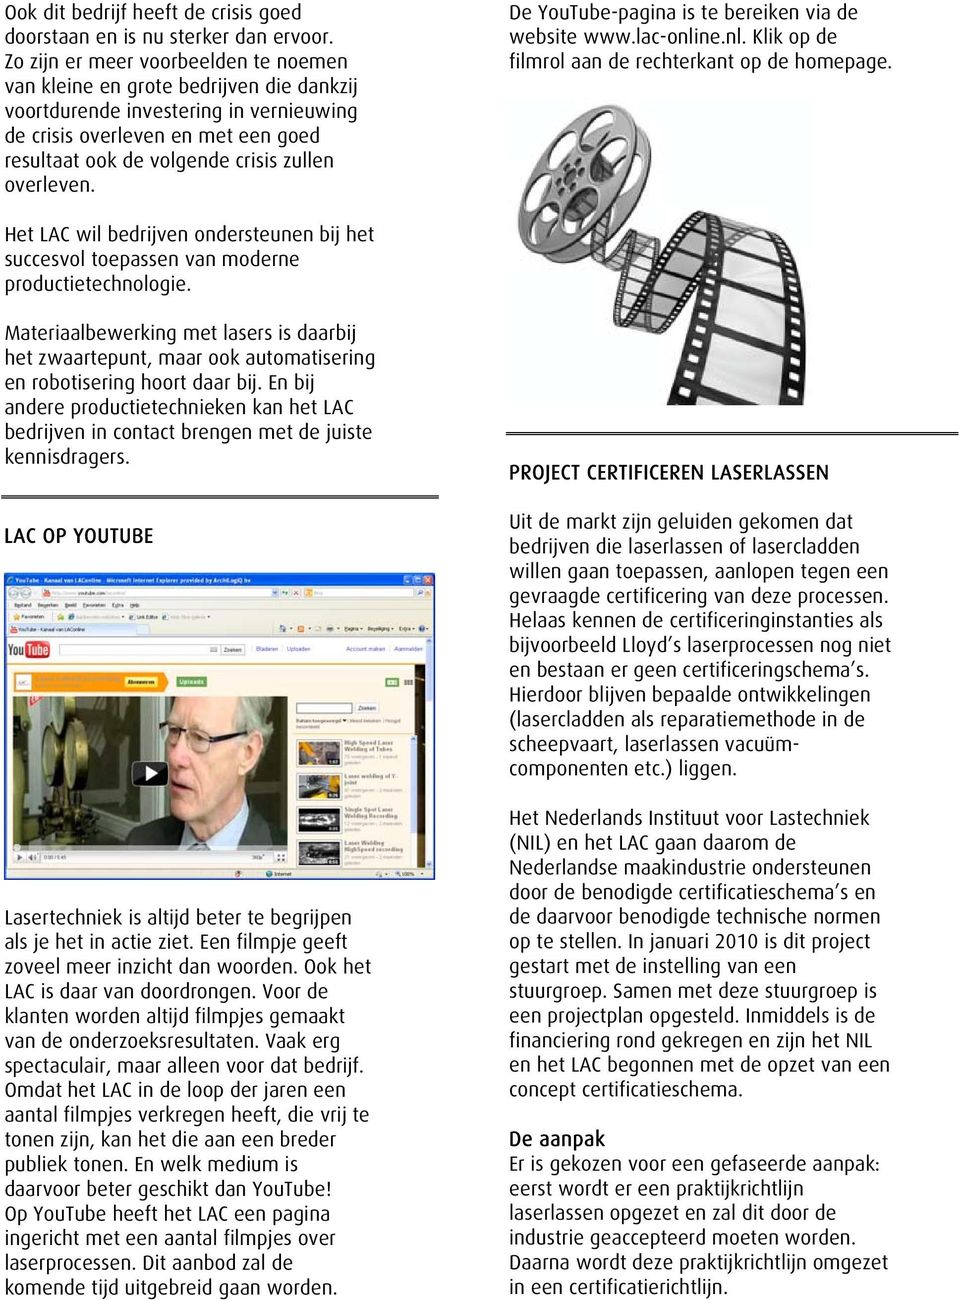 overleven. De YouTube-pagina is te bereiken via de website www.lac-online.nl. Klik op de filmrol aan de rechterkant op de homepage.